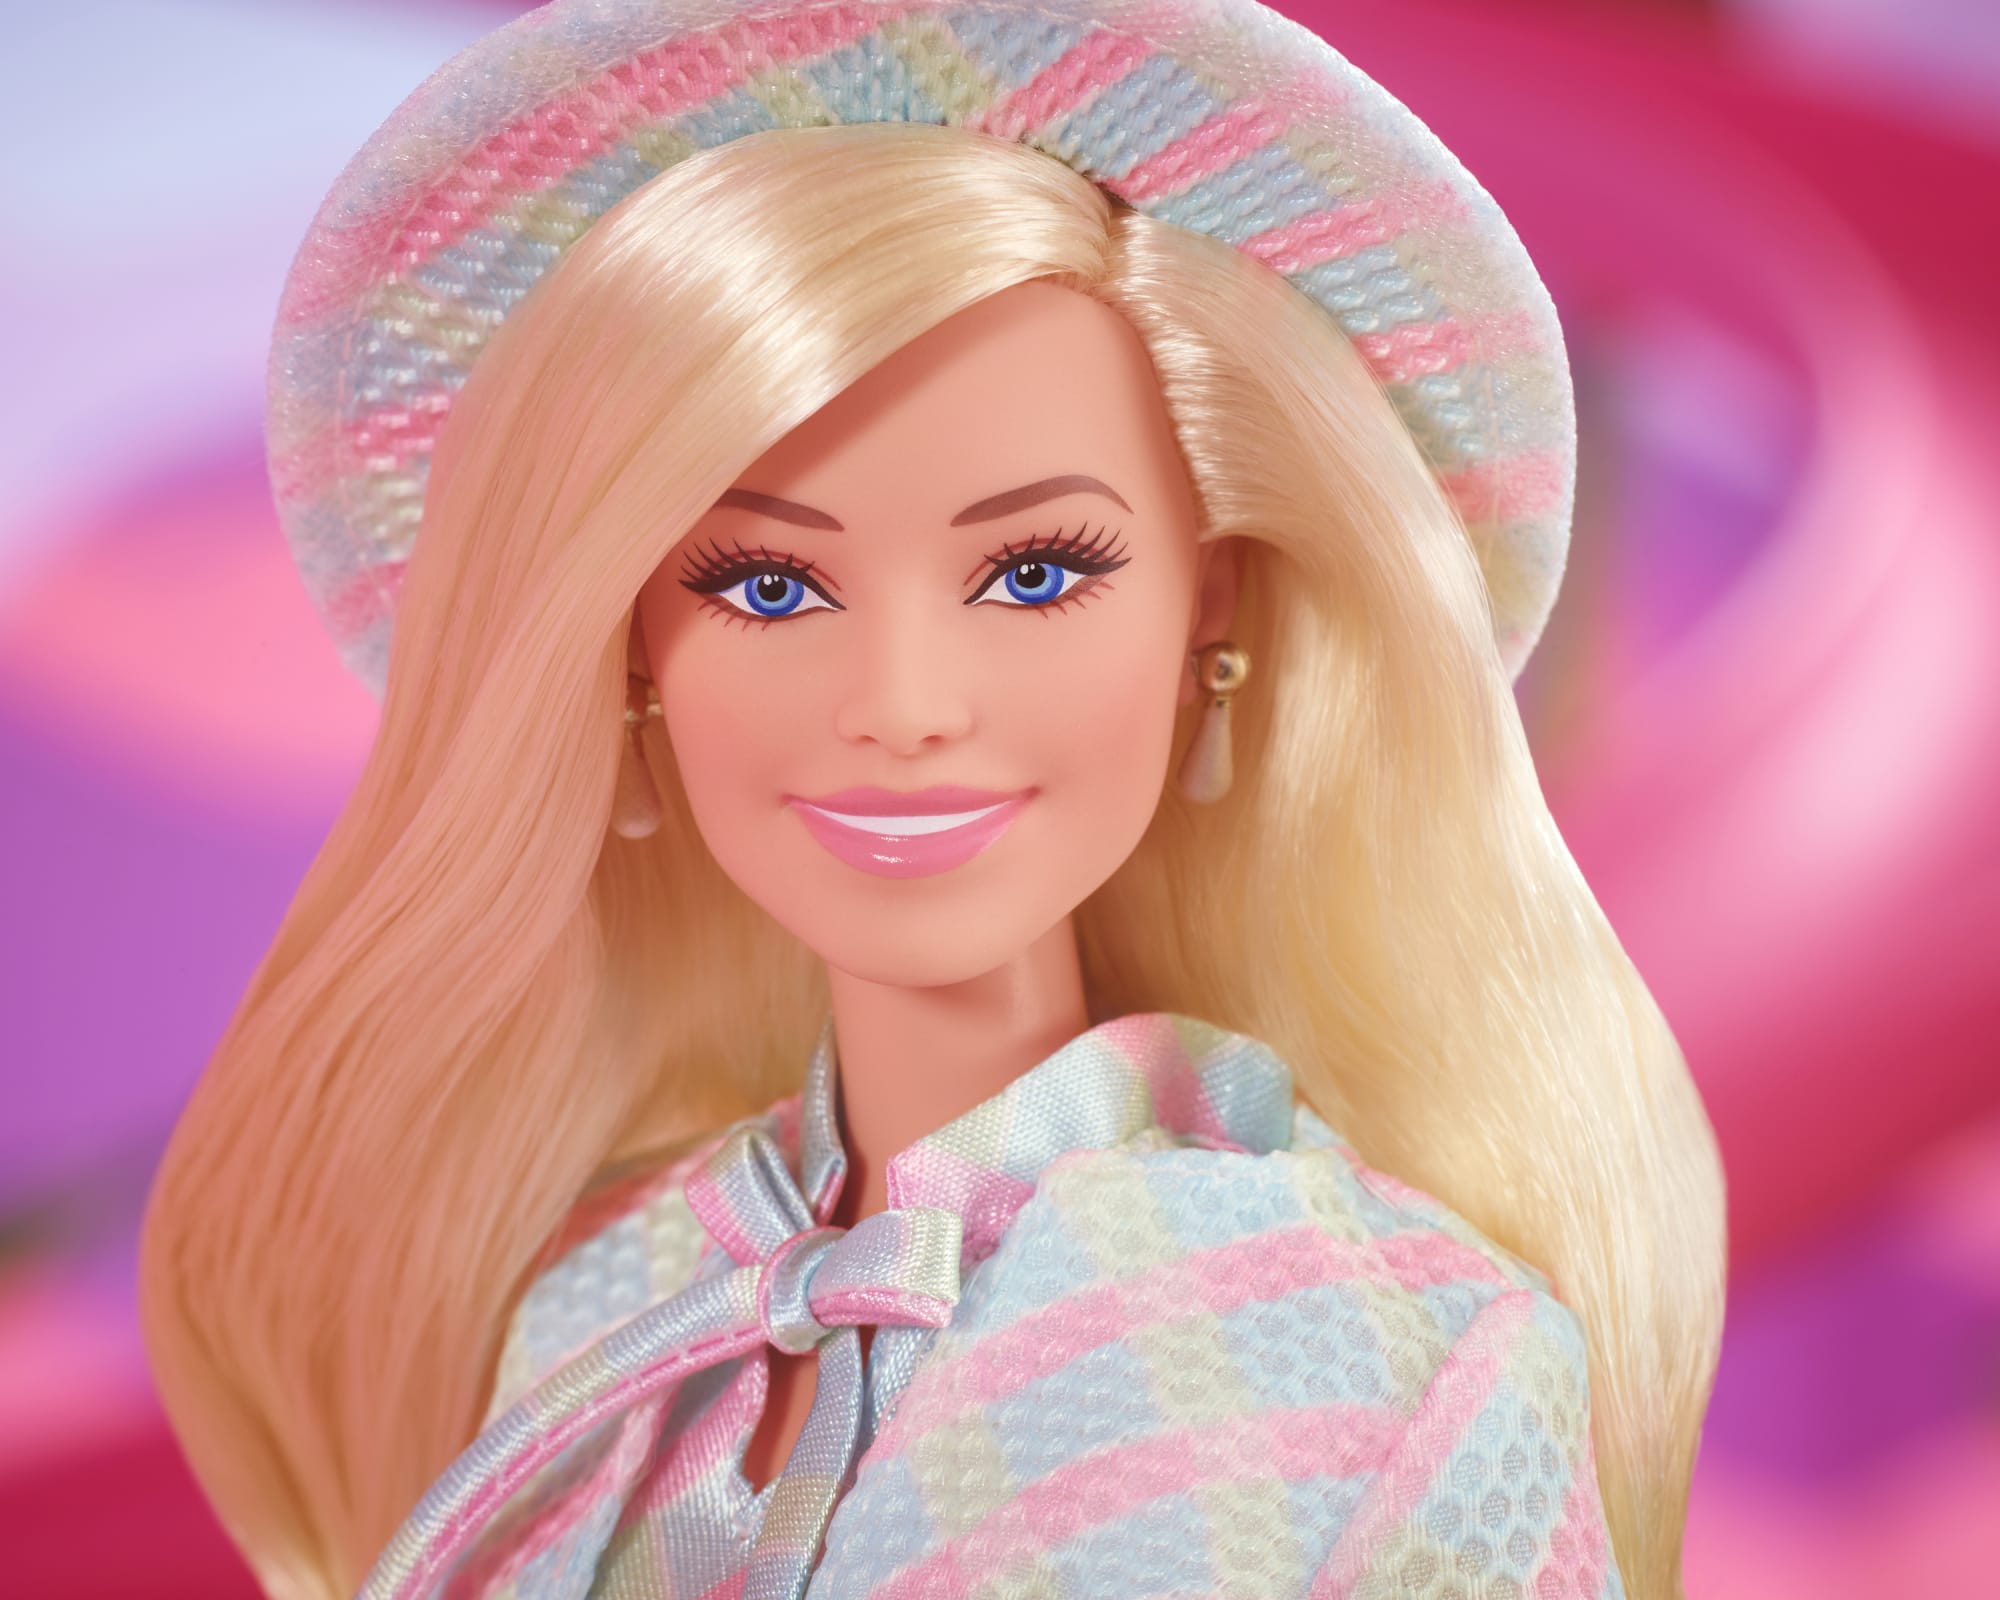 Jogo Barbie Face Care and Dress Up no Jogos 360